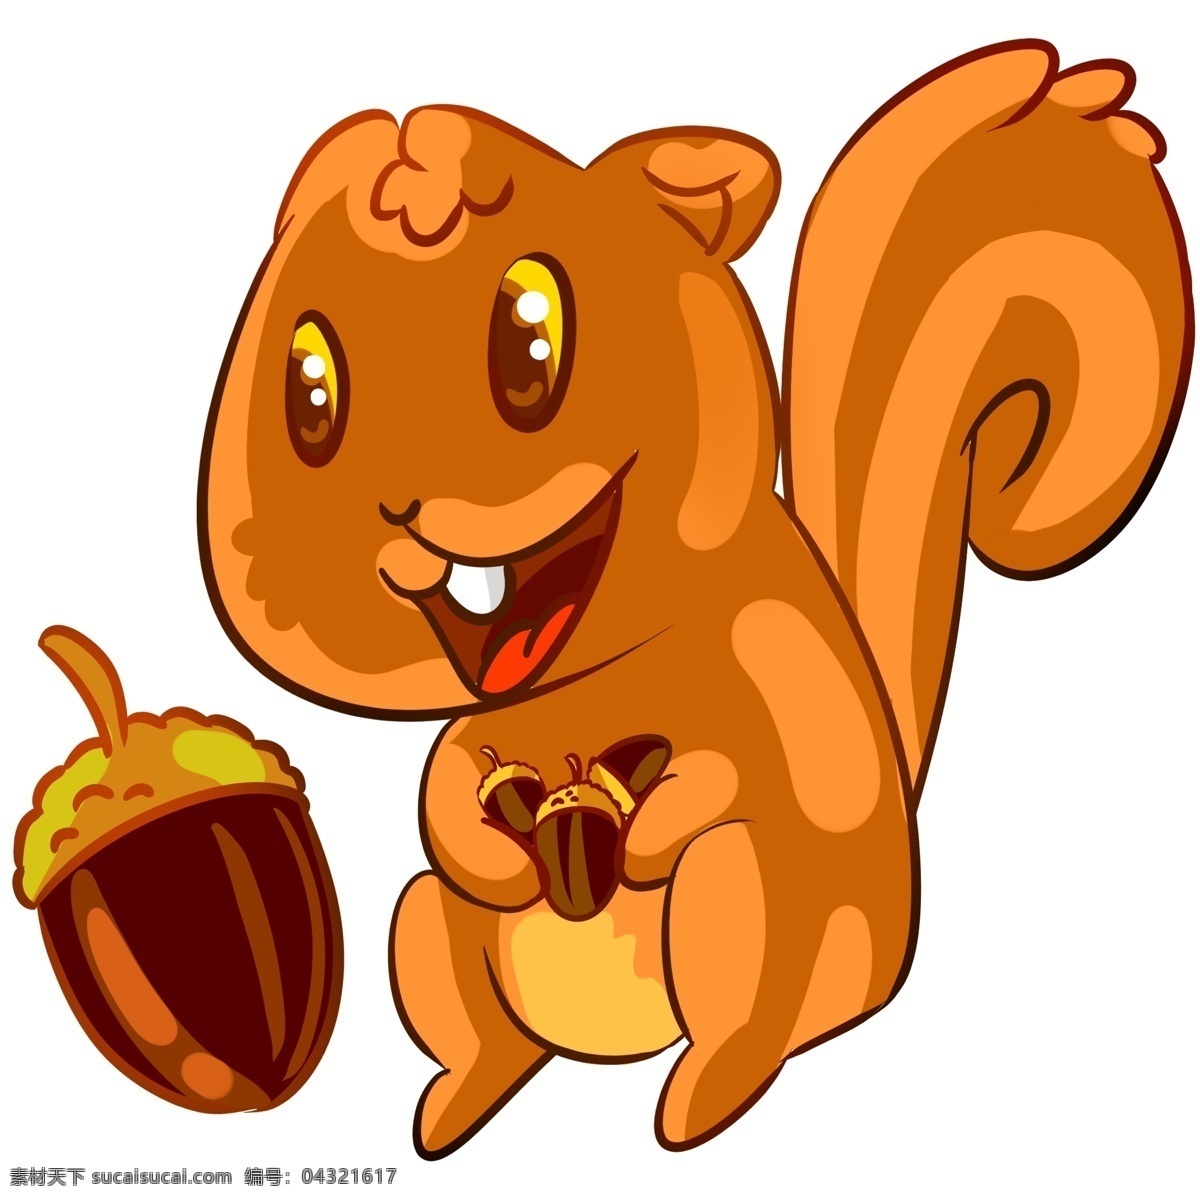 开心 松鼠 松果 小松鼠 开心的松鼠 果实 高兴的松鼠 笑脸 吃松子的松鼠 微笑的松鼠